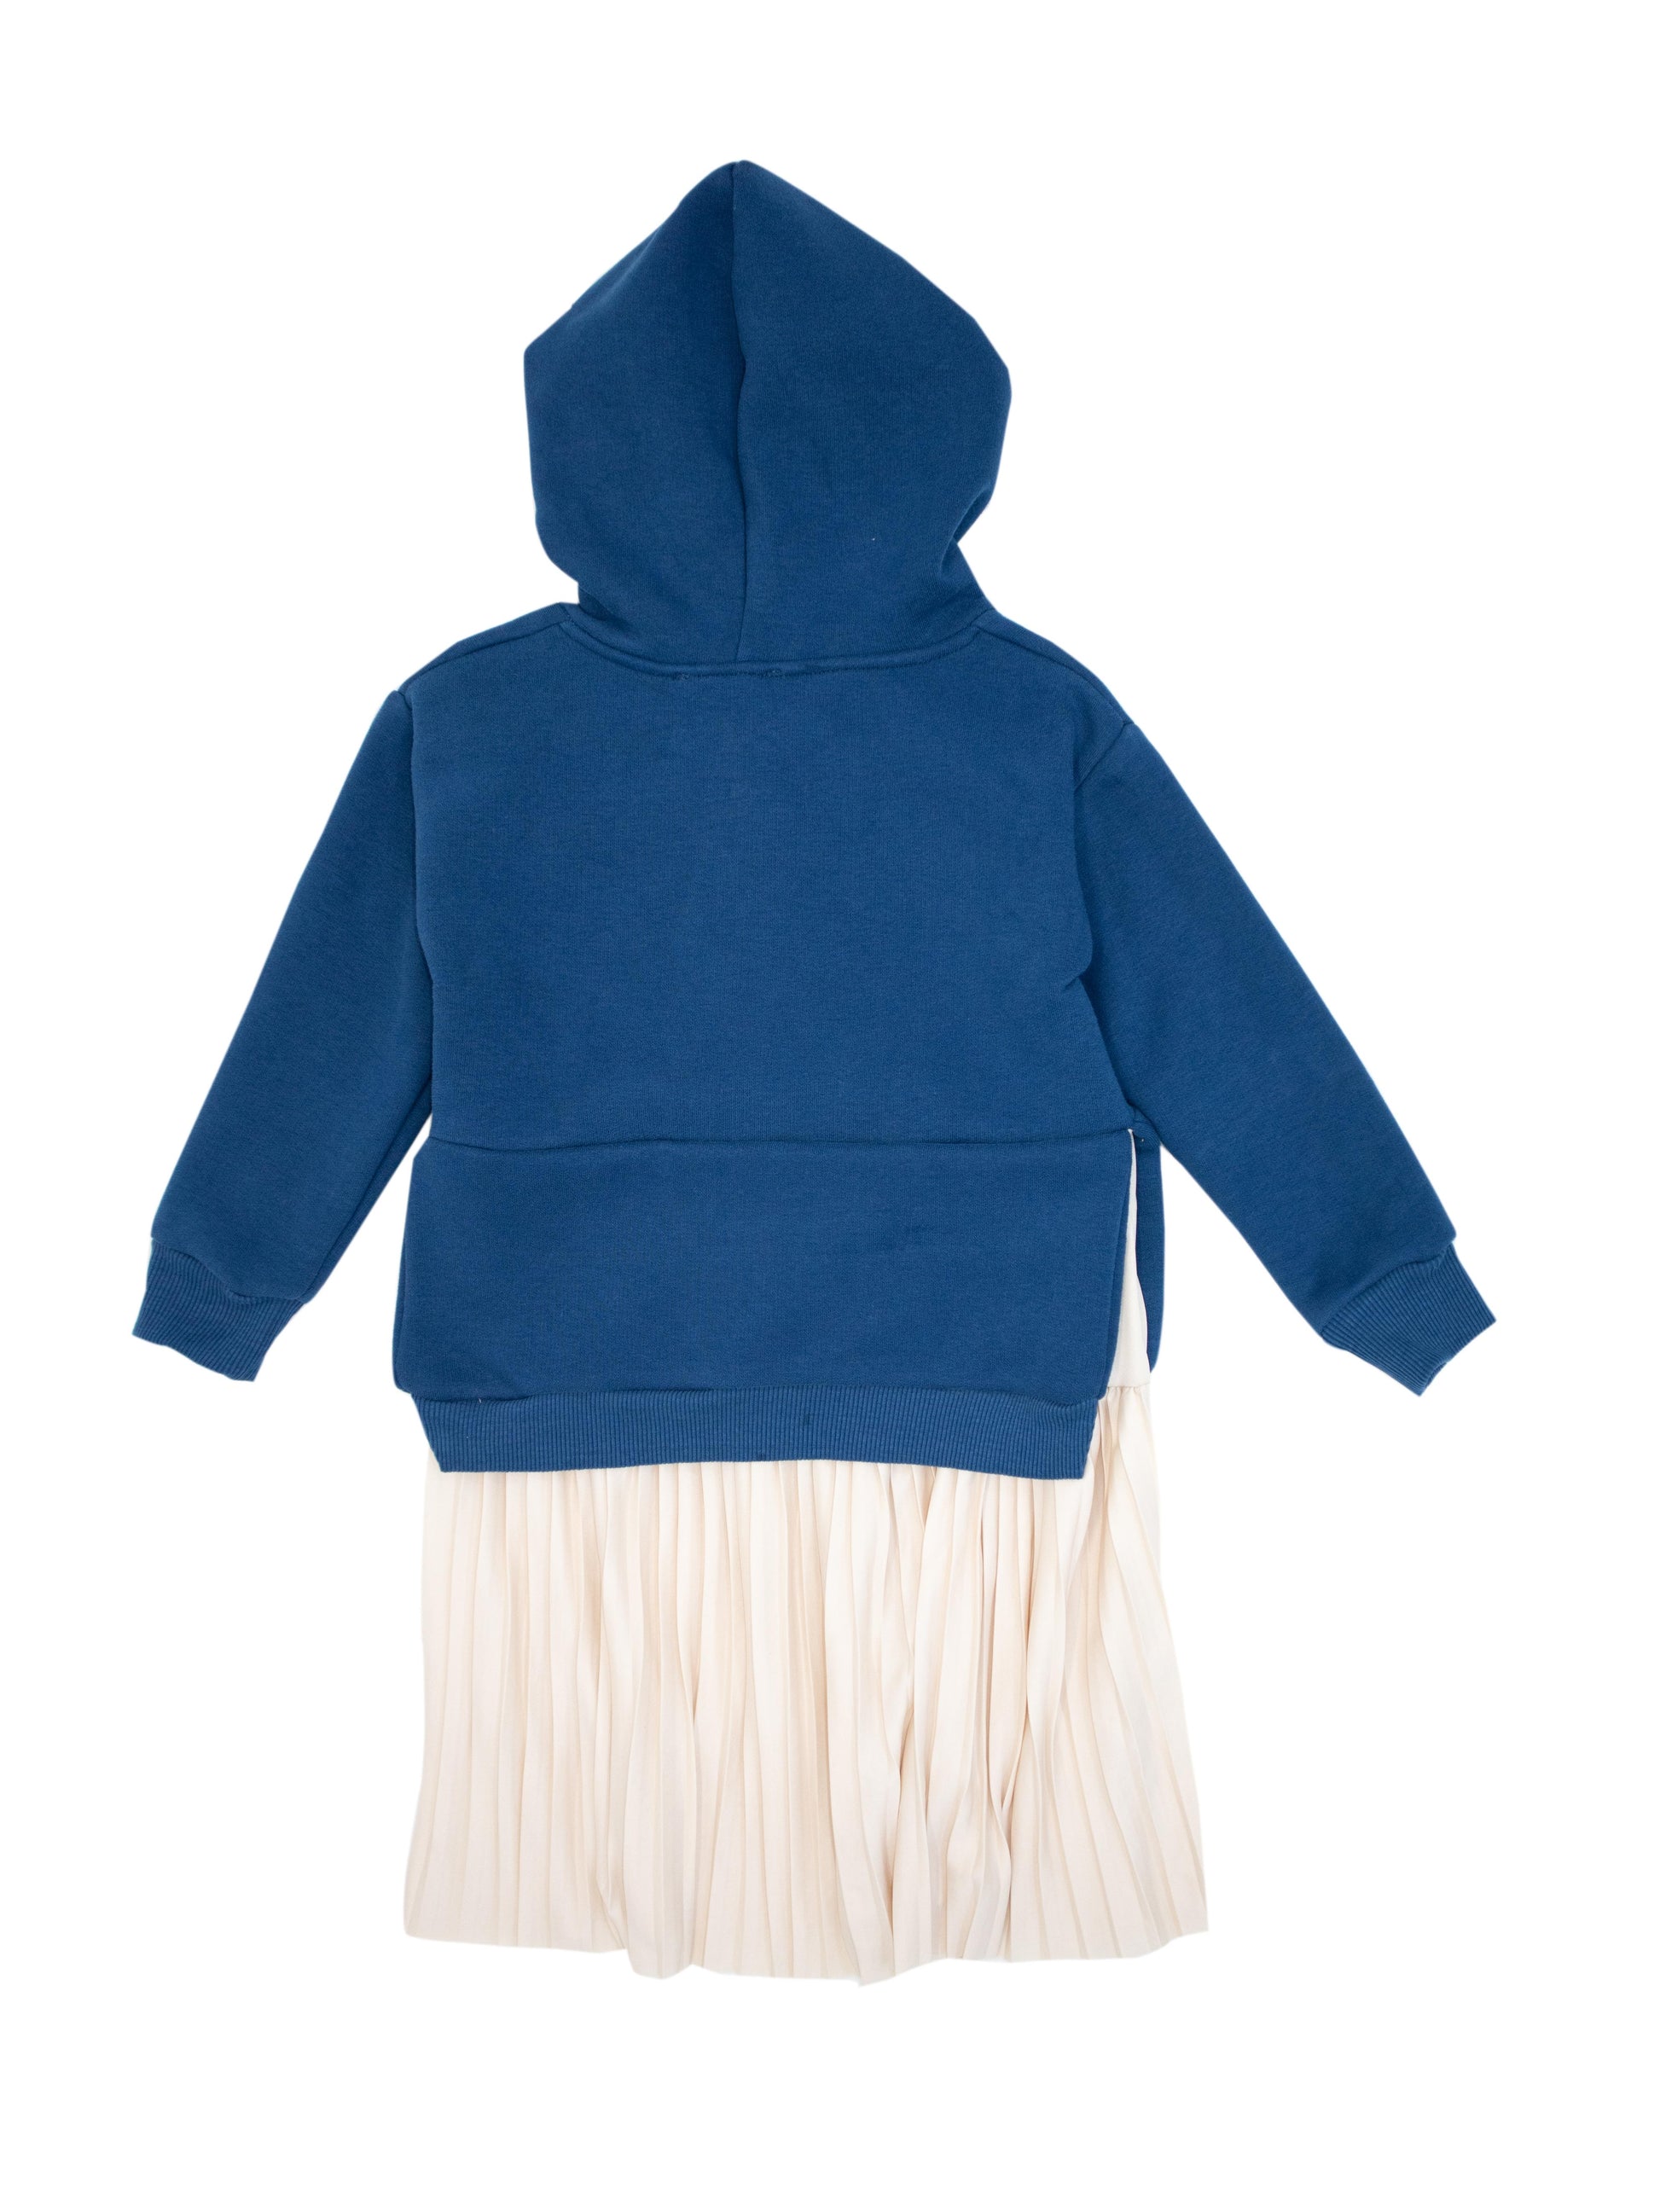 Hooded Girl Child Skirt Dress 